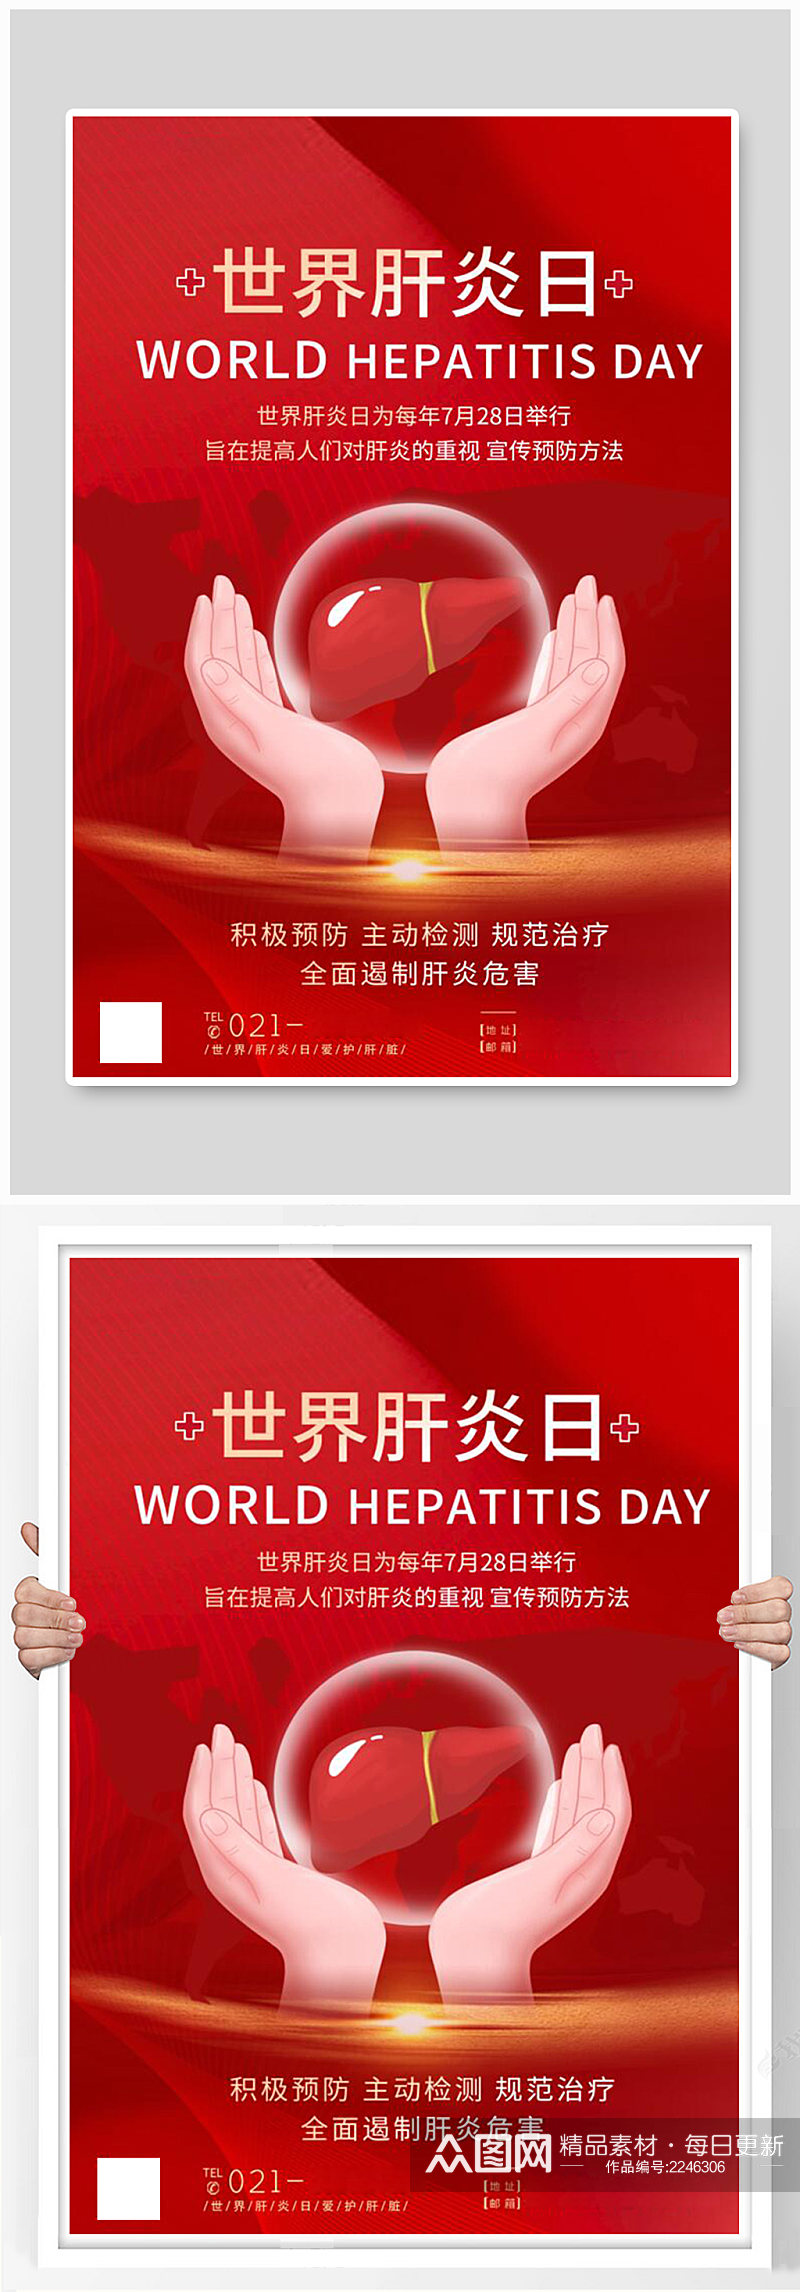 红色世界肝炎日爱护肝脏海报素材